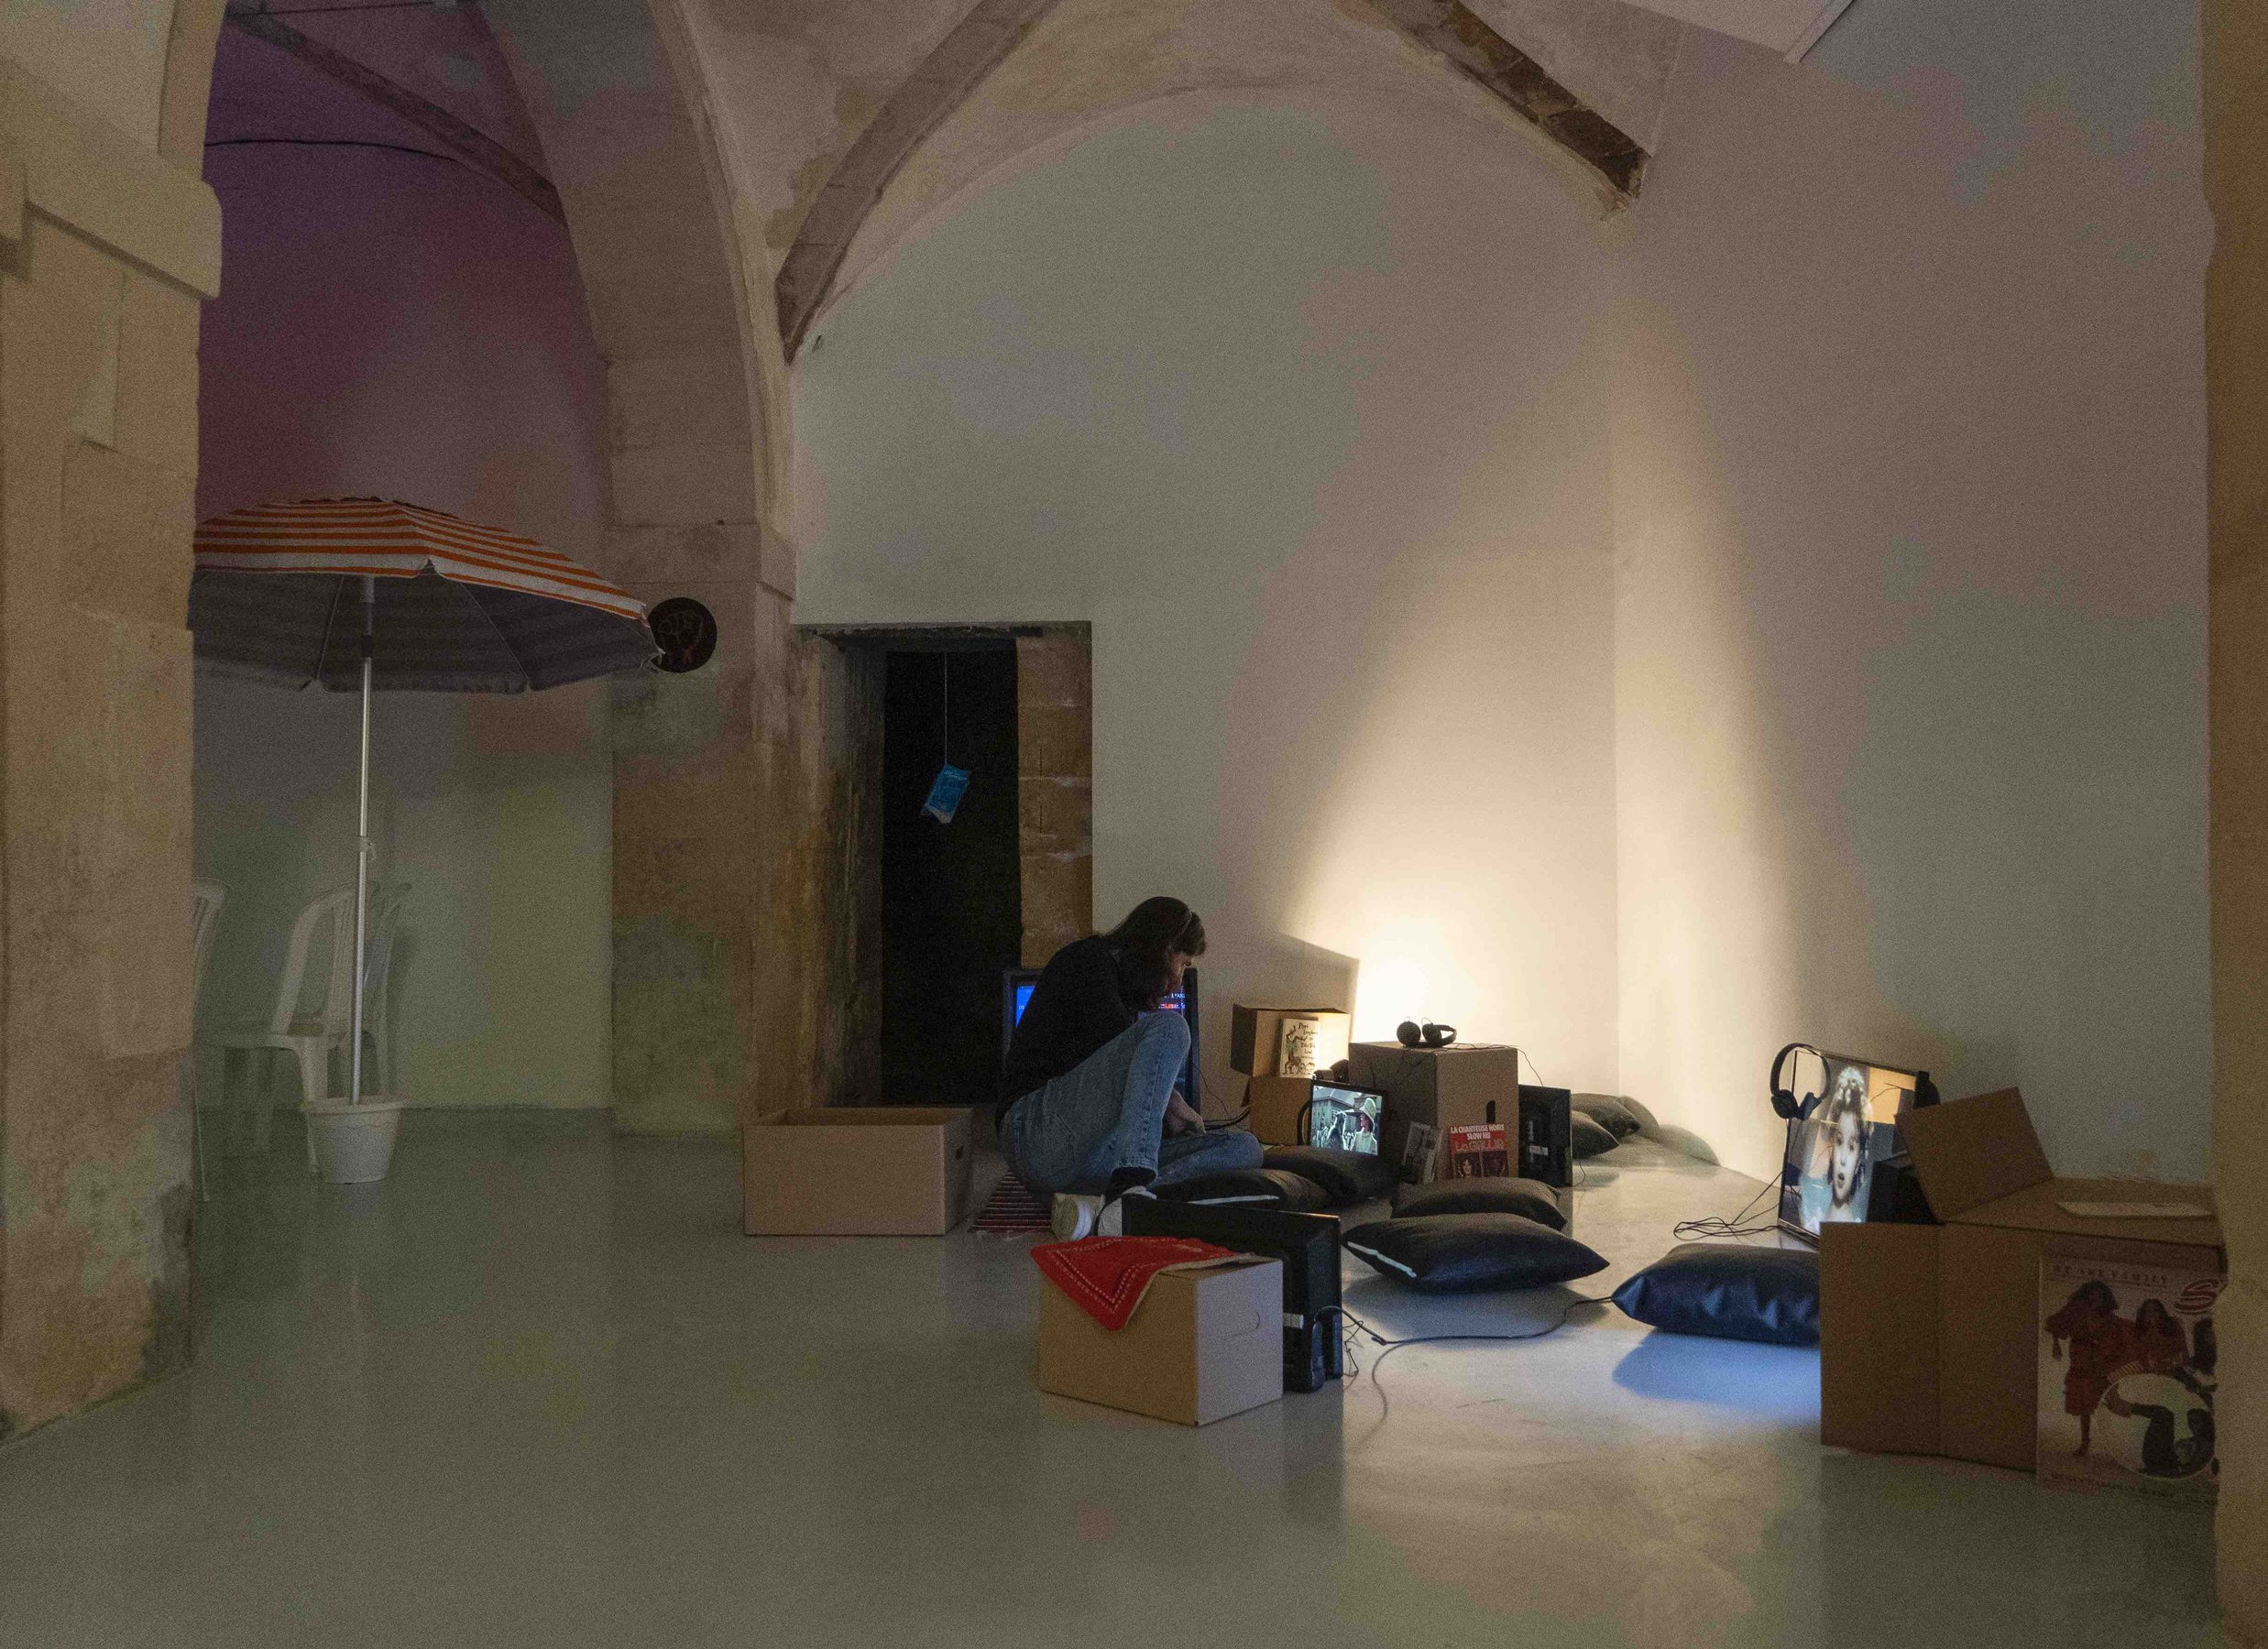 installation view at Laveronica arte contemporanea